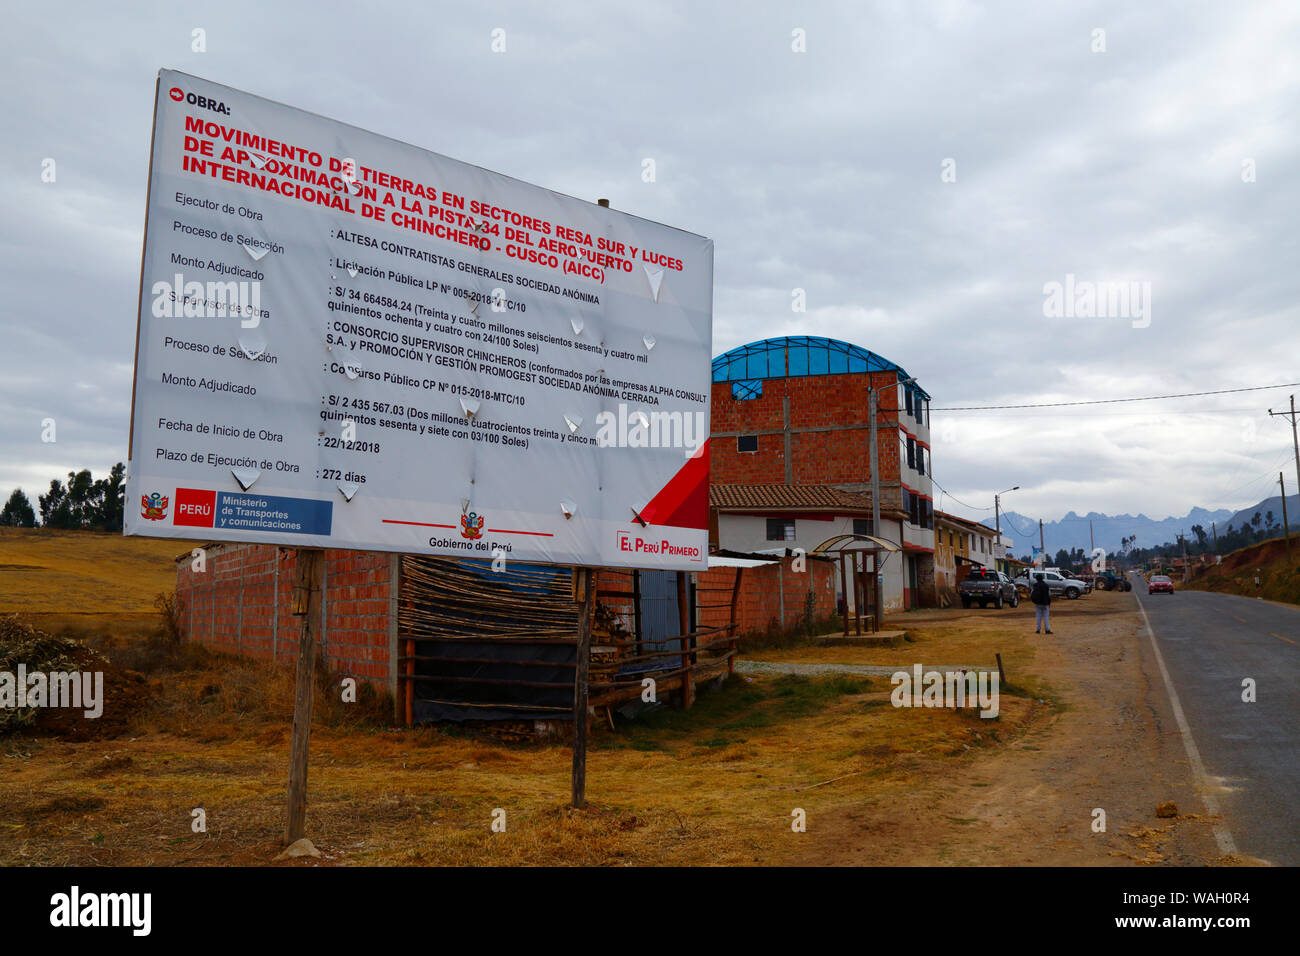 Signe qui annonce les détails des mouvements de terre, le début de la construction d'un nouvel aéroport international de Chinchero pour Cuzco et Machu Picchu. La région de Cusco, Pérou Banque D'Images